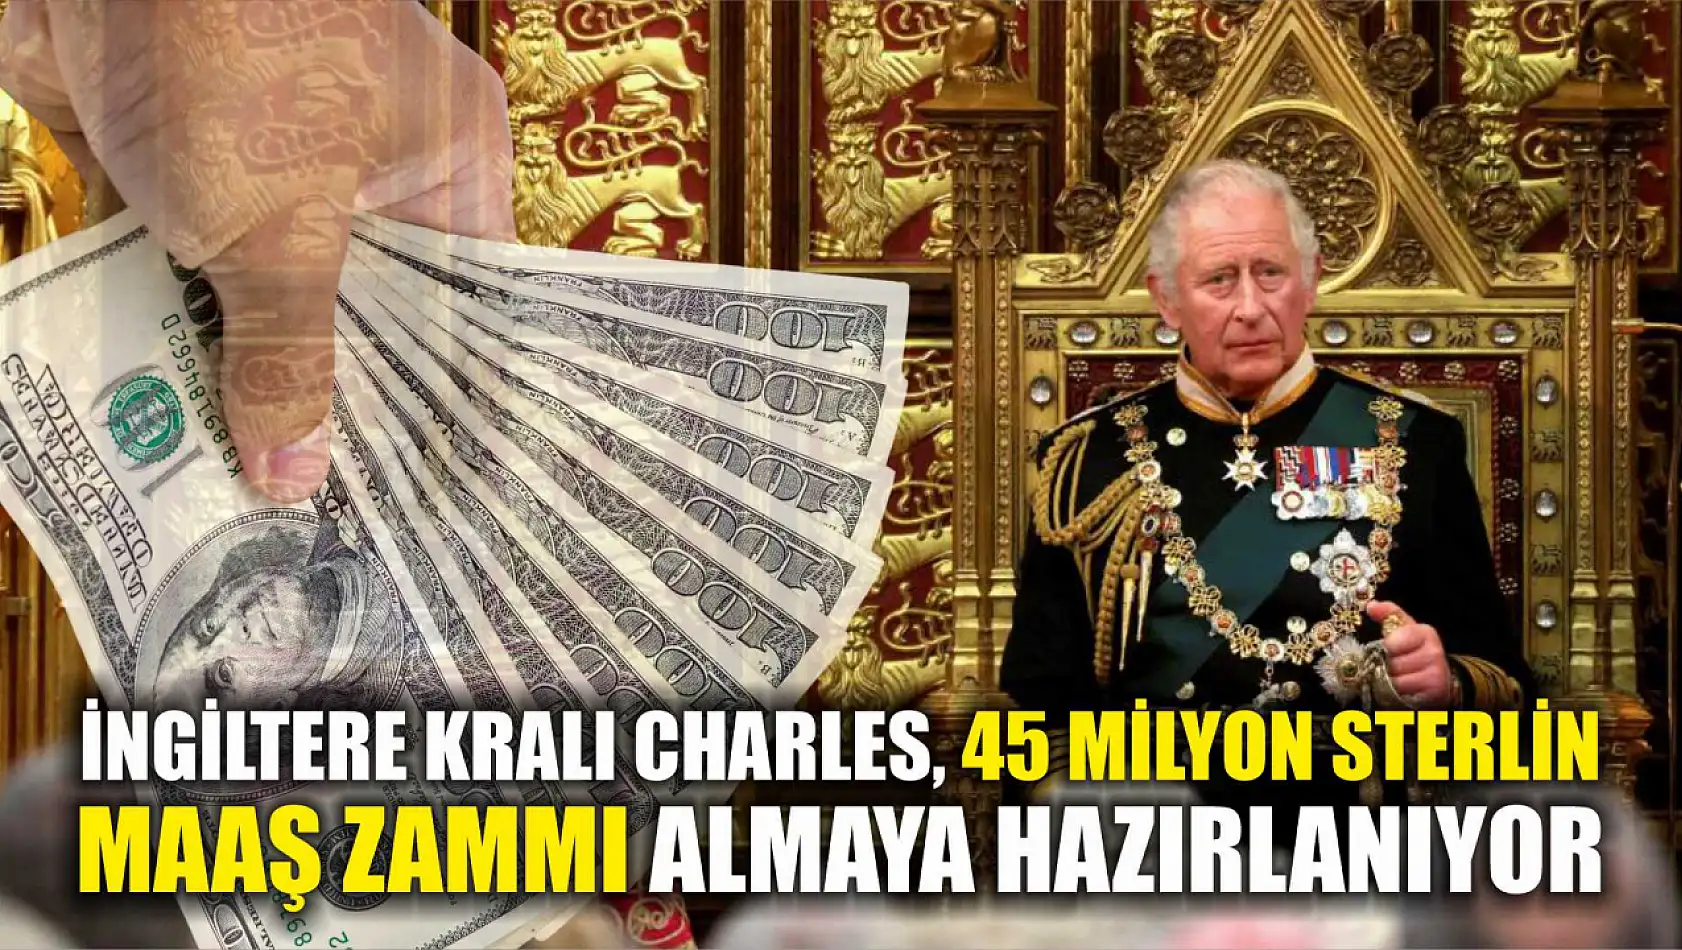 İngiltere Kralı Charles, 45 milyon sterlin maaş zammı almaya hazırlanıyor